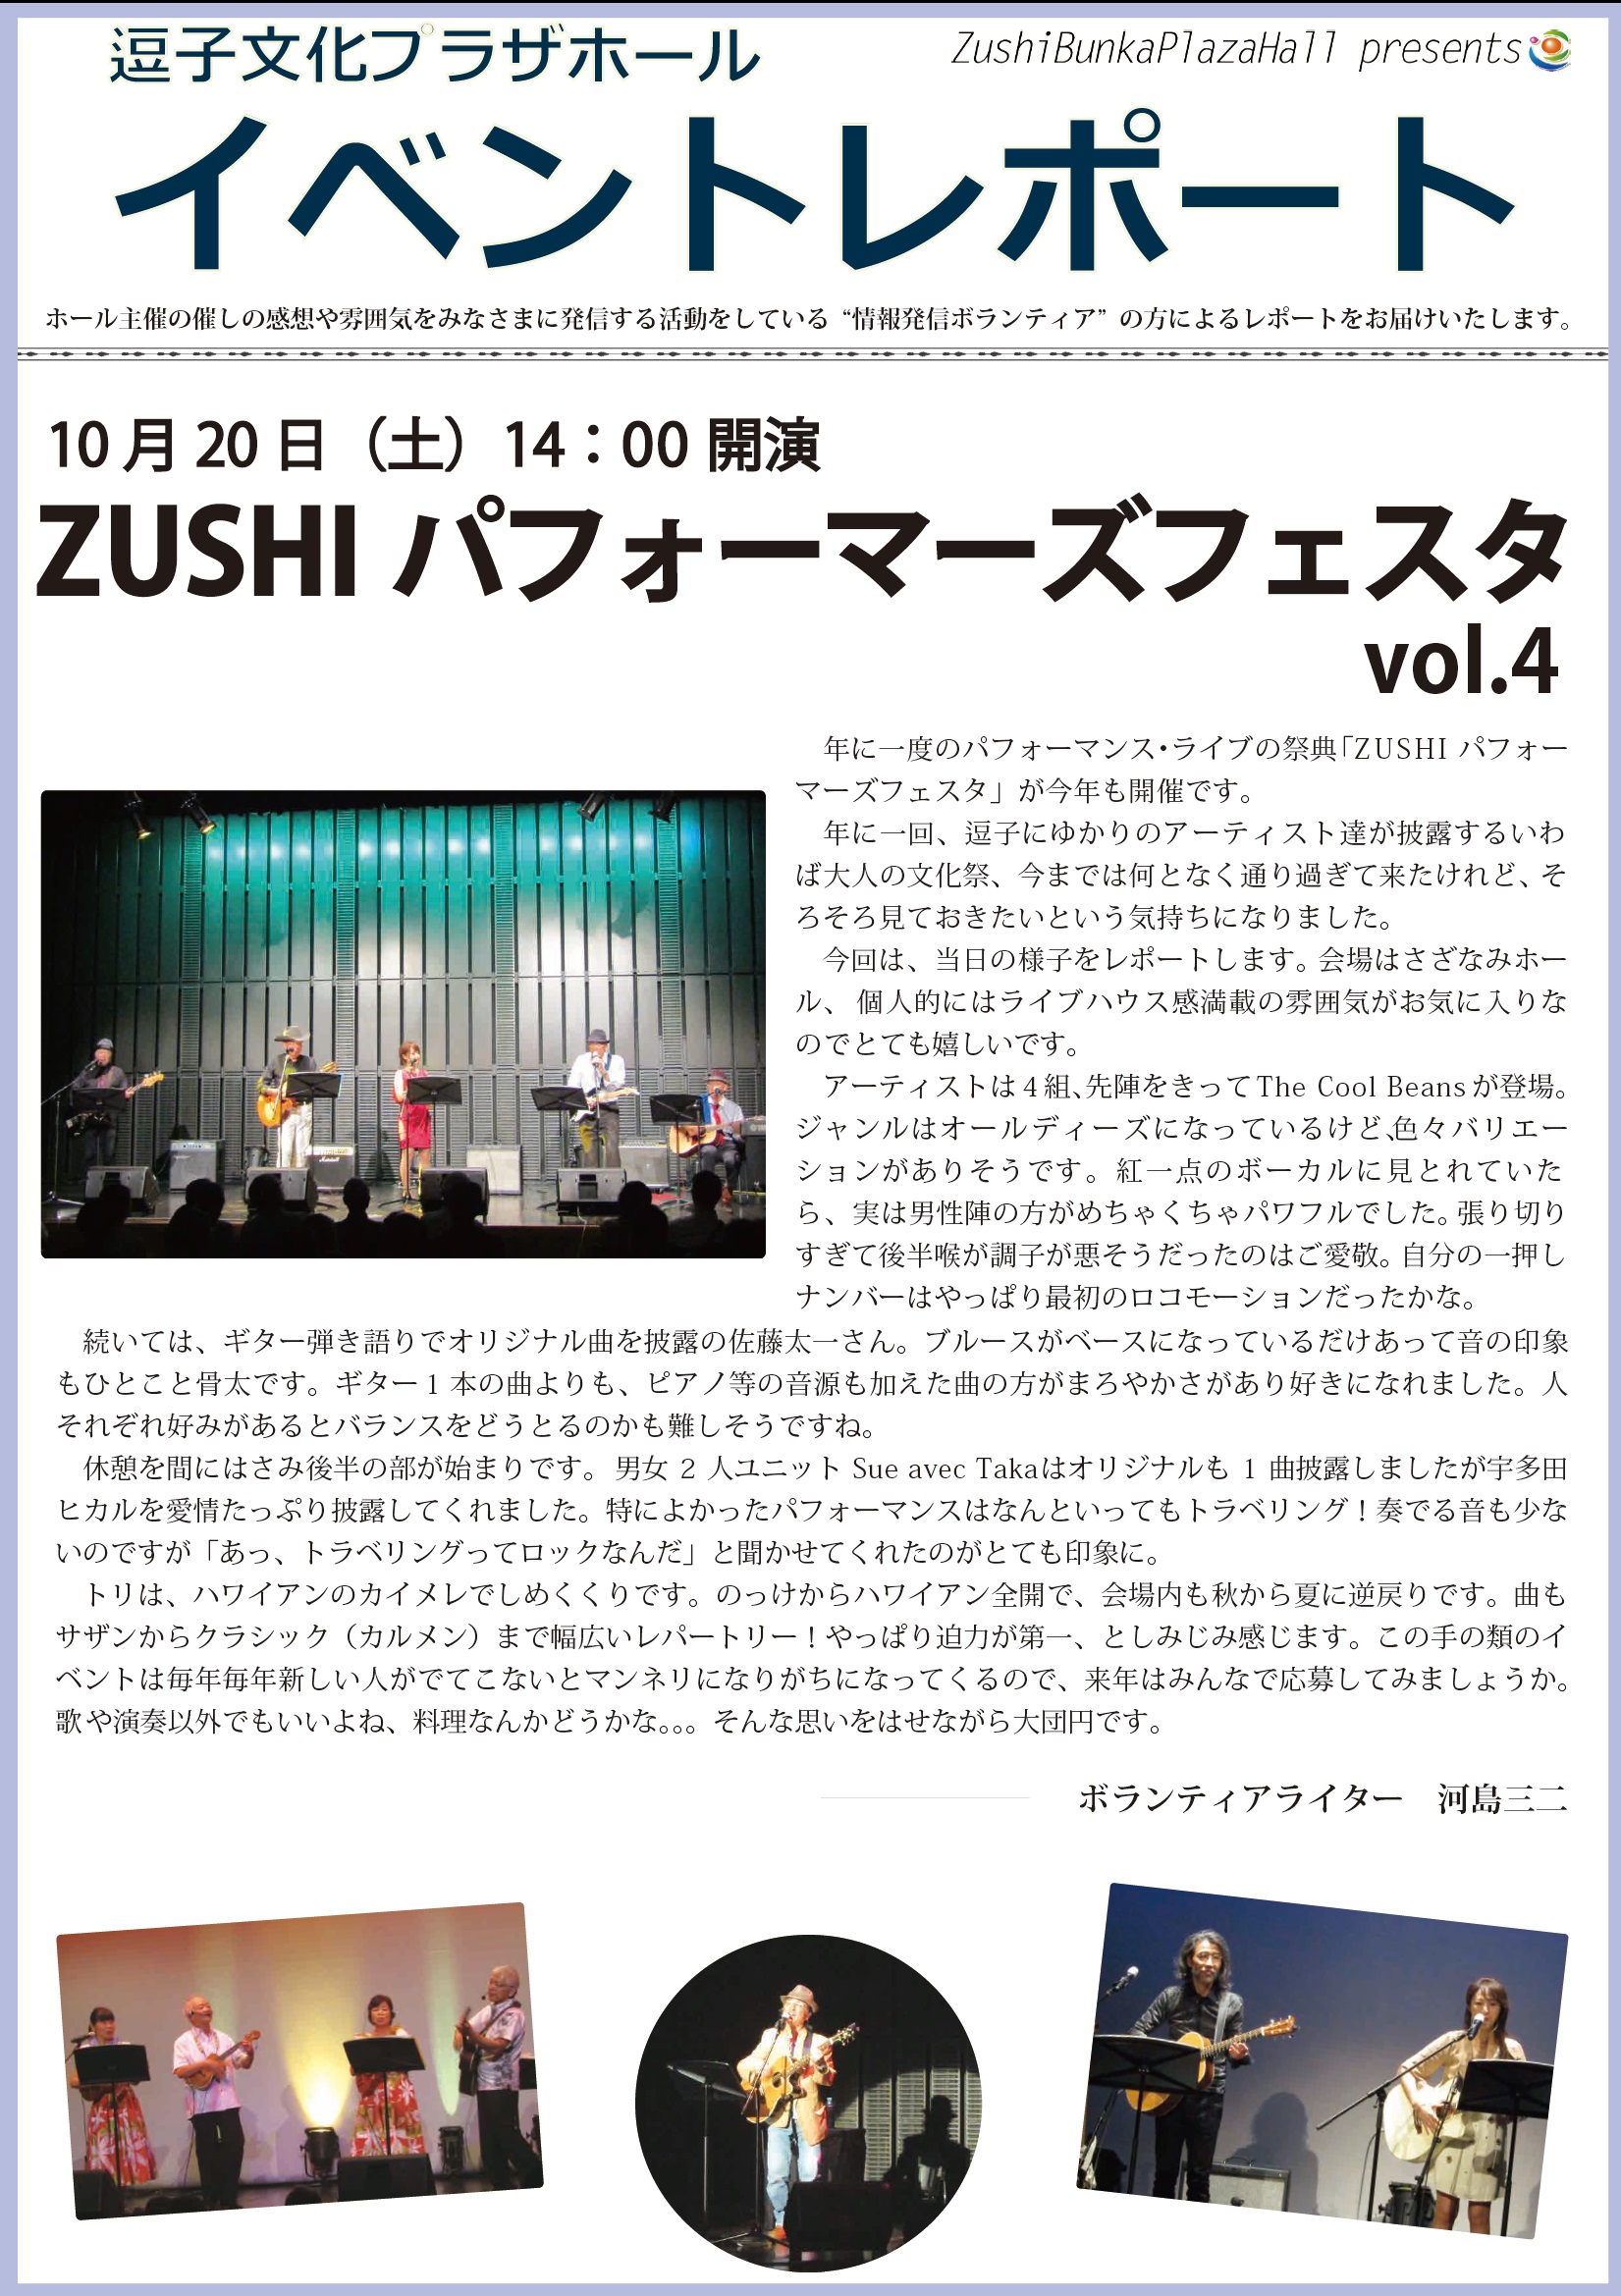 イベントレポート「ZUSHIパフォーマーズフェスタVol.4」2018年10月20日（土）開催